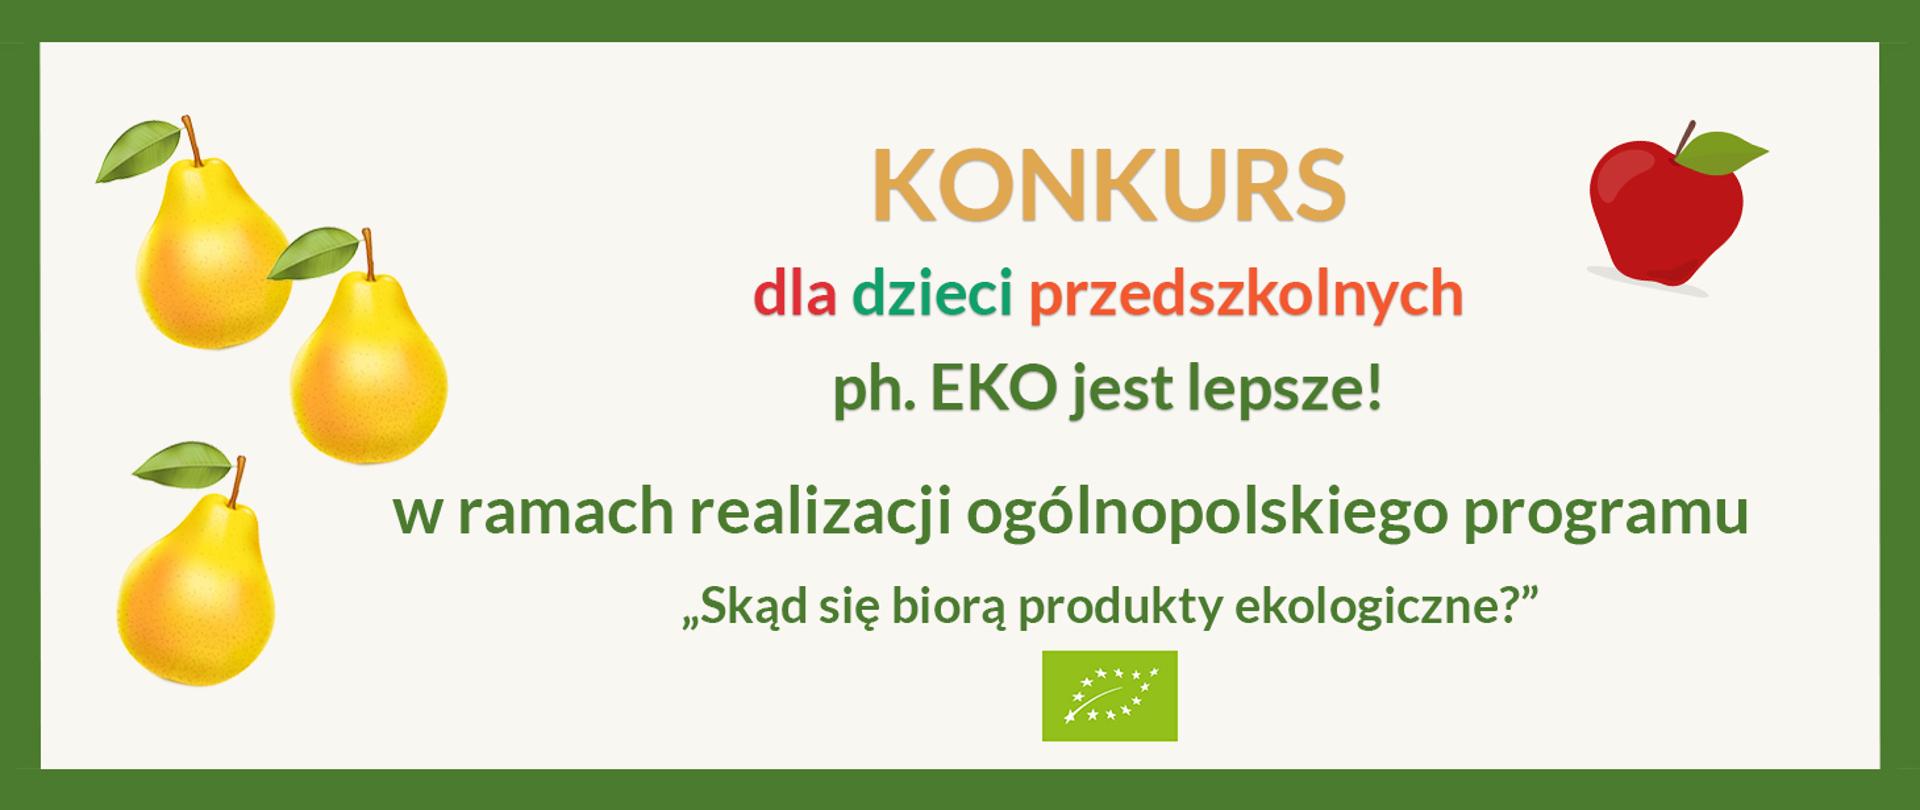 KONKURS dla dzieci przedszkolnych ph.: „Eko jest lepsze!” w ramach realizacji ogólnopolskiego programu edukacyjnego „Skąd się biorą produkty ekologiczne?